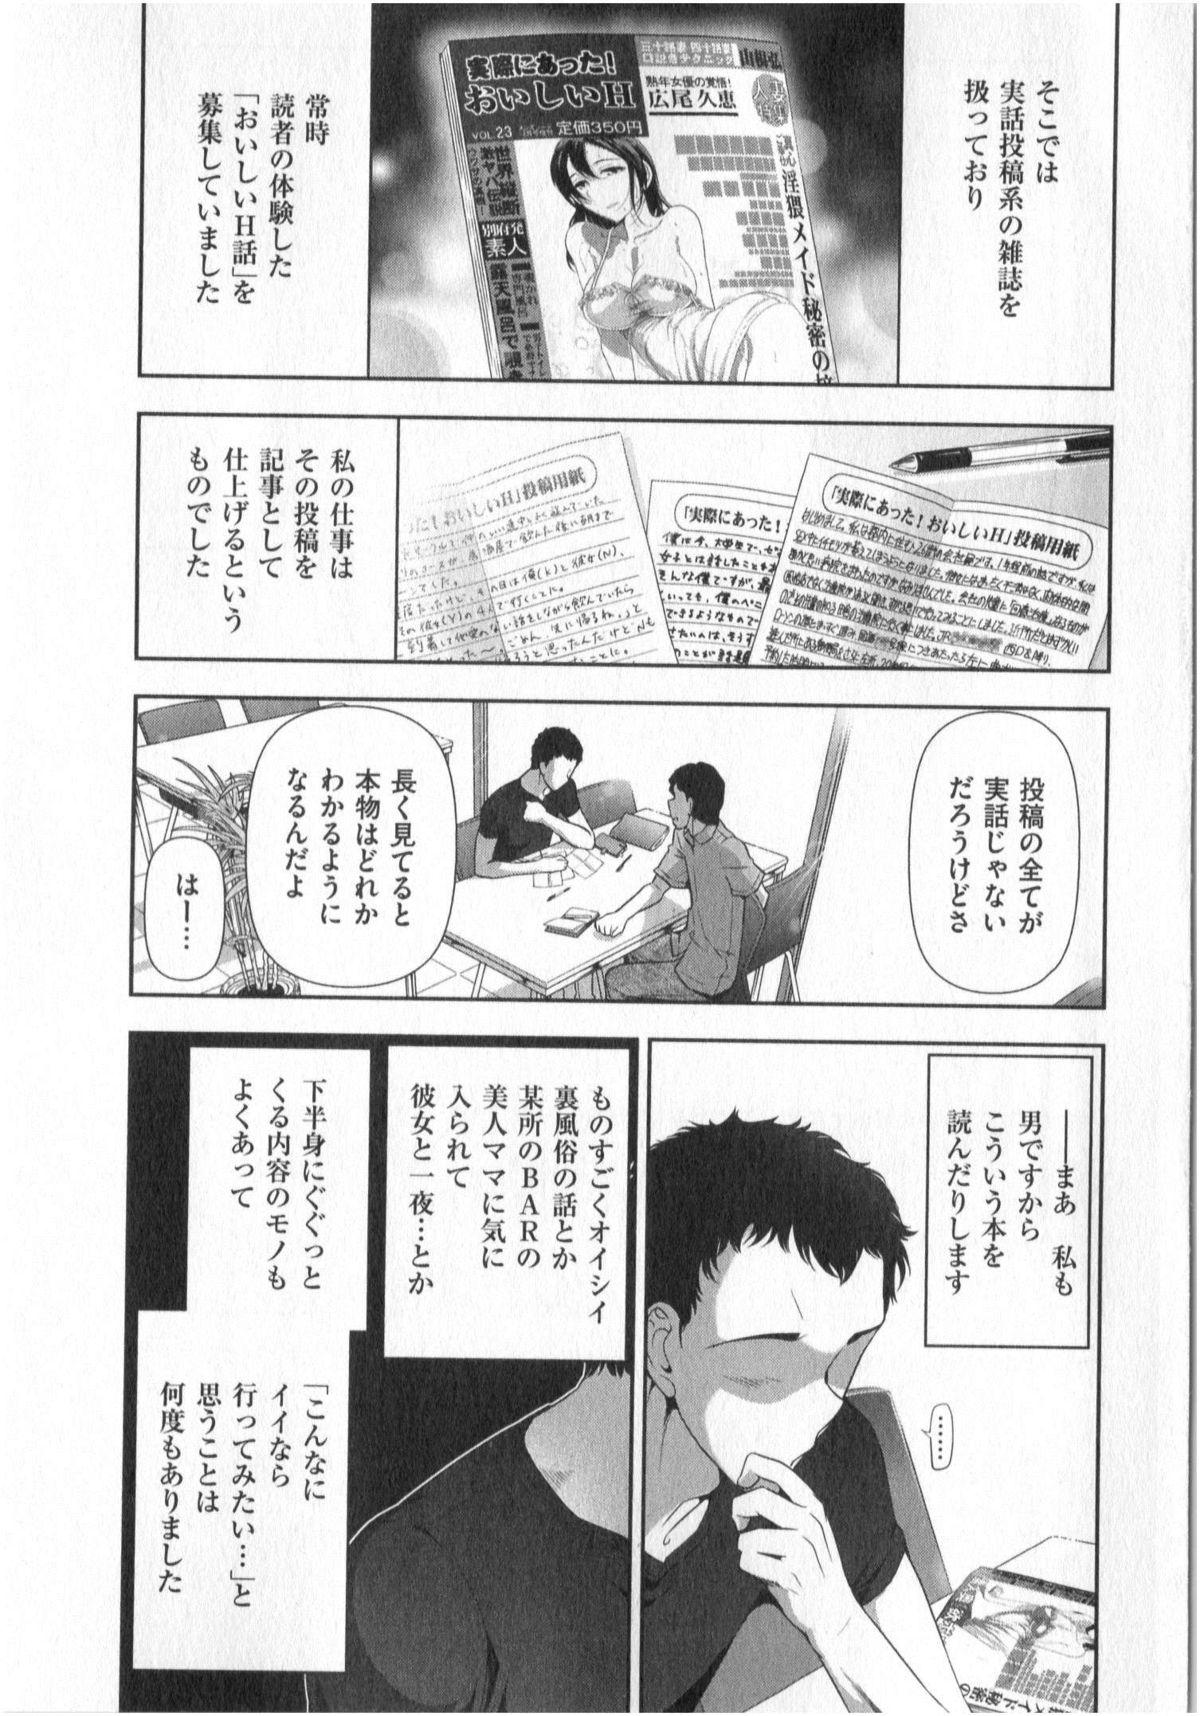 Rough Yonimo Ecchi na Toshidensetsu vol. 01 Cachonda - Page 7